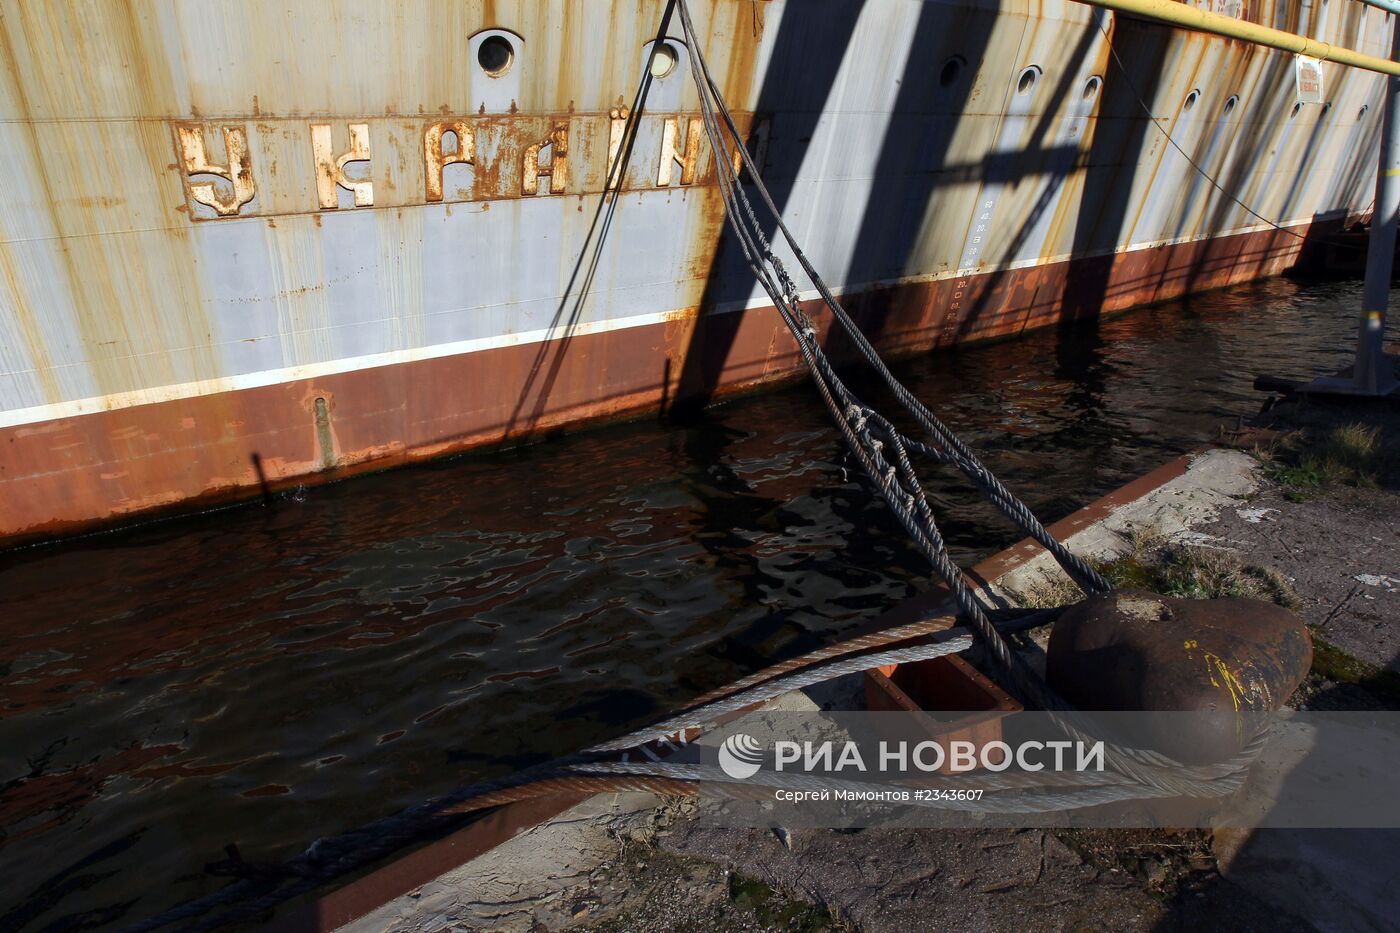 Ракетный крейсер "Украина" на Николаевском судостроительном заводе на Украине